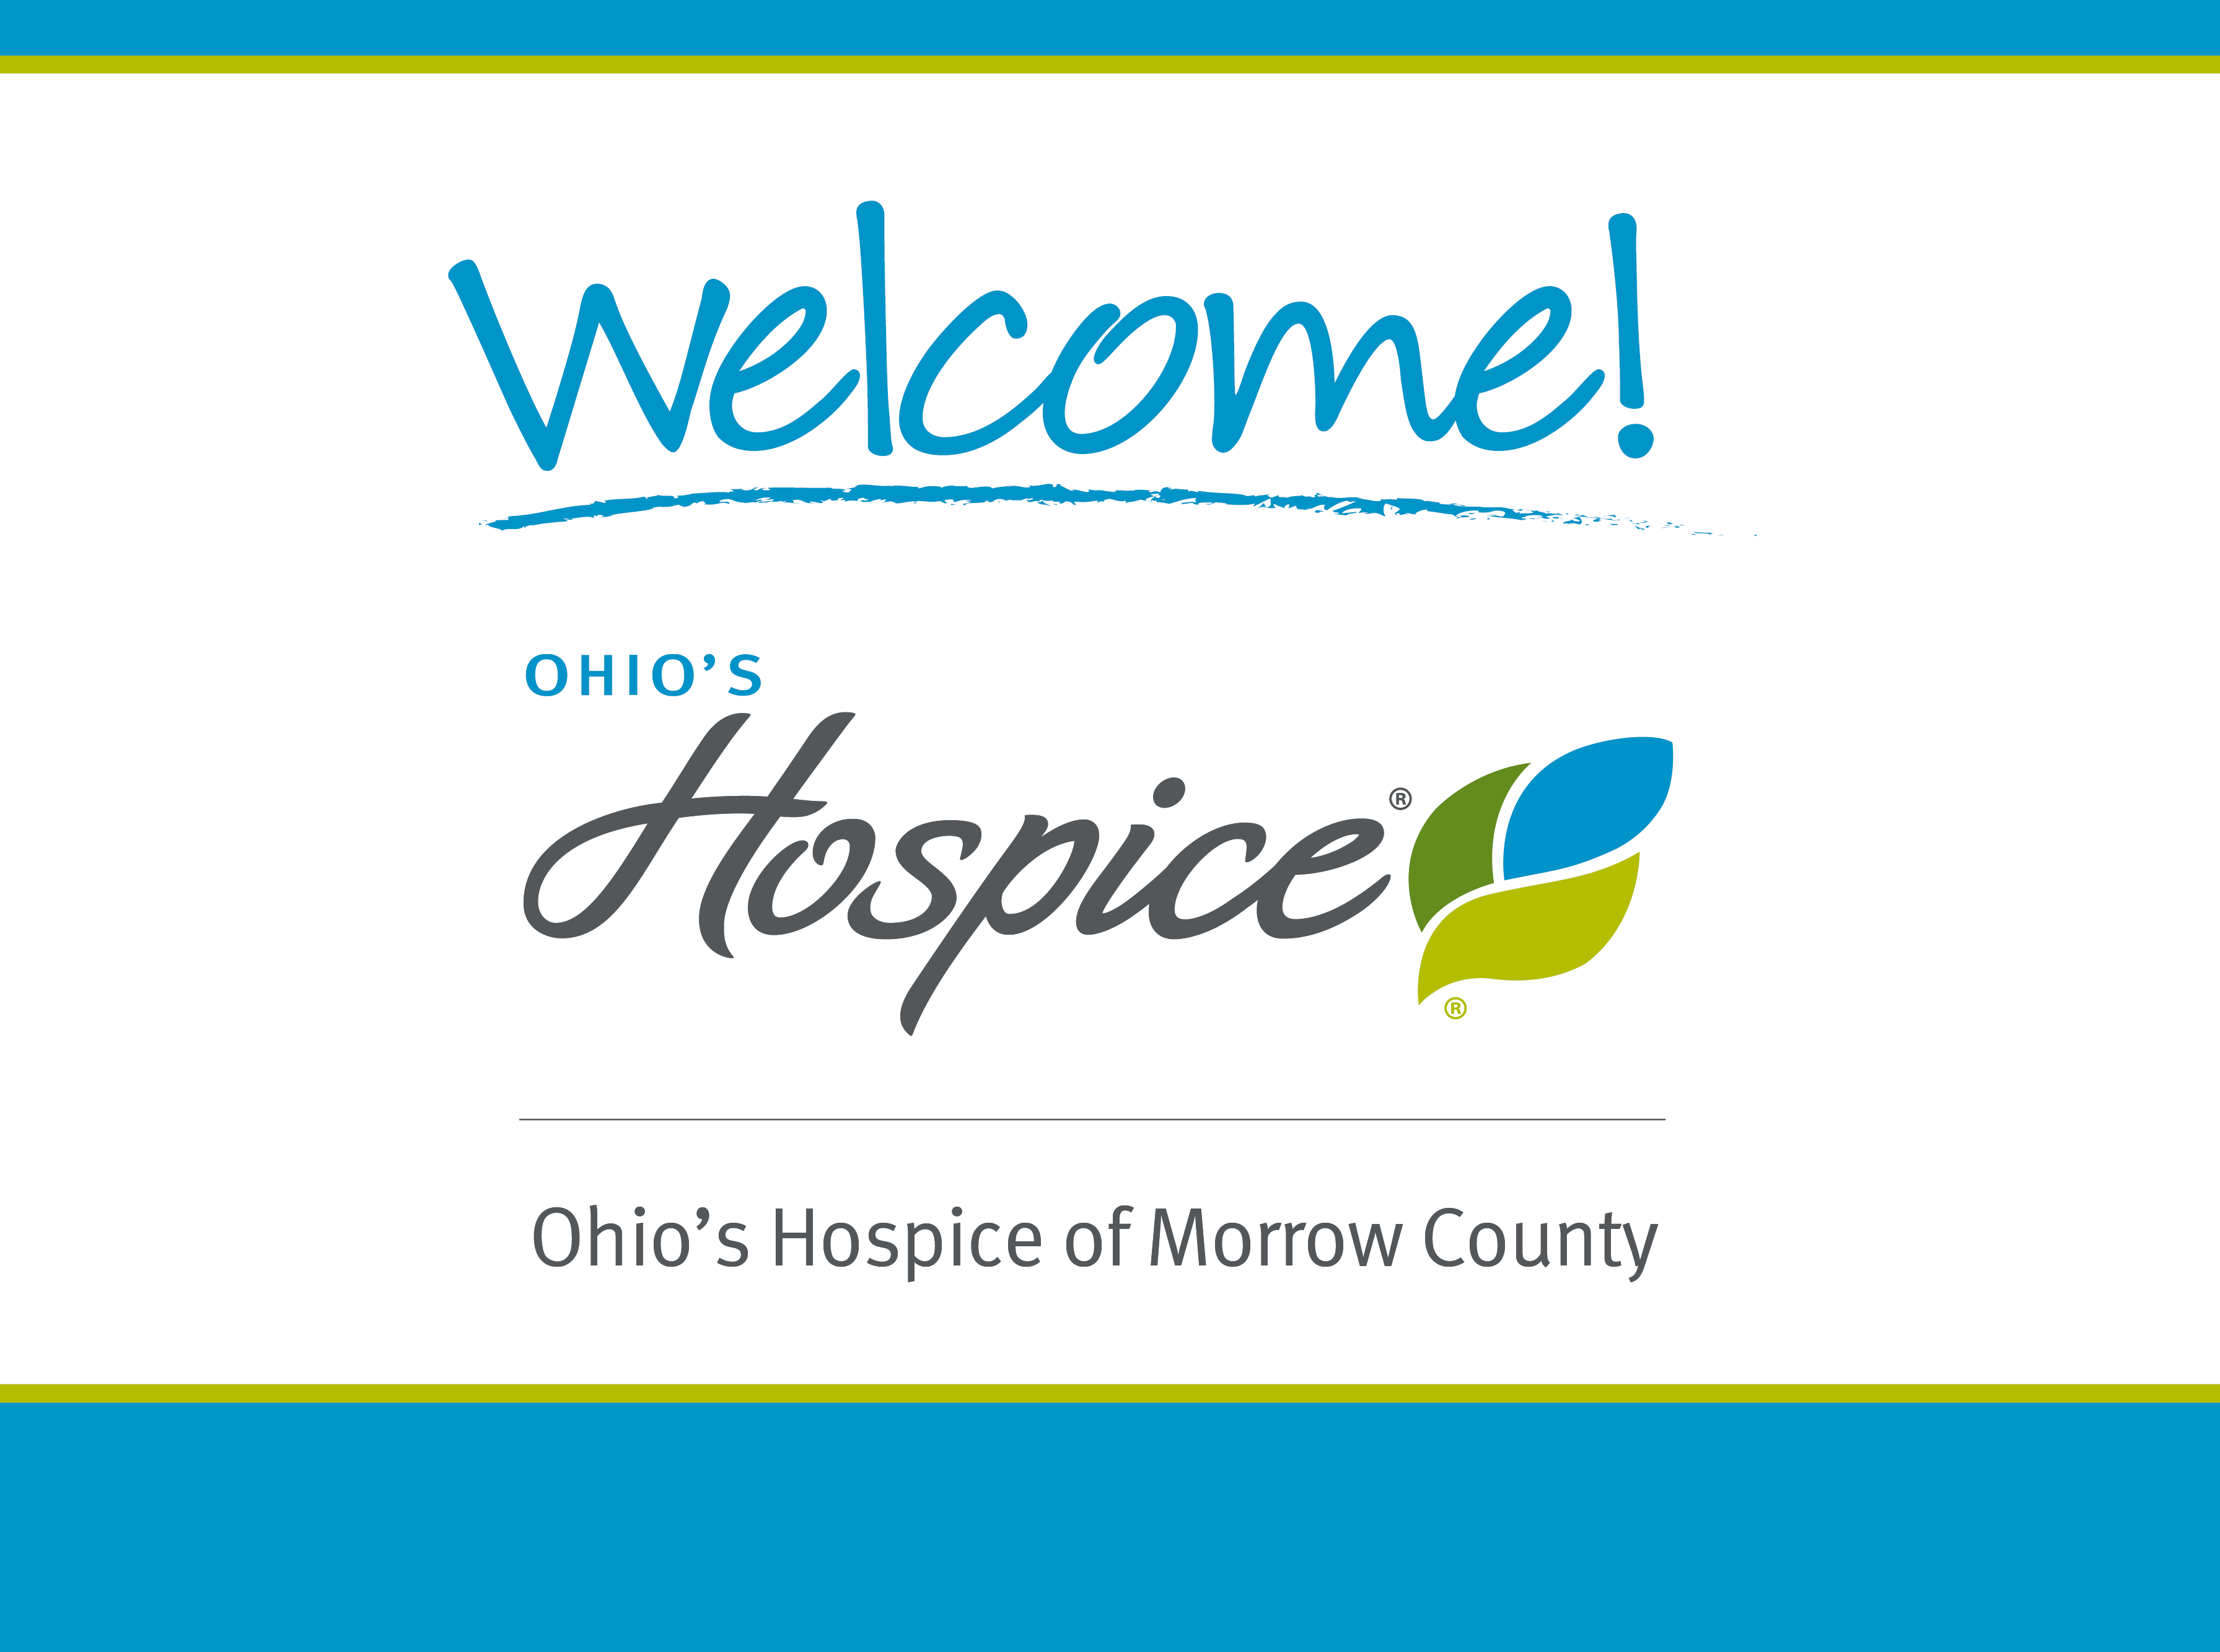 Ohio's Hospice of Morrow County